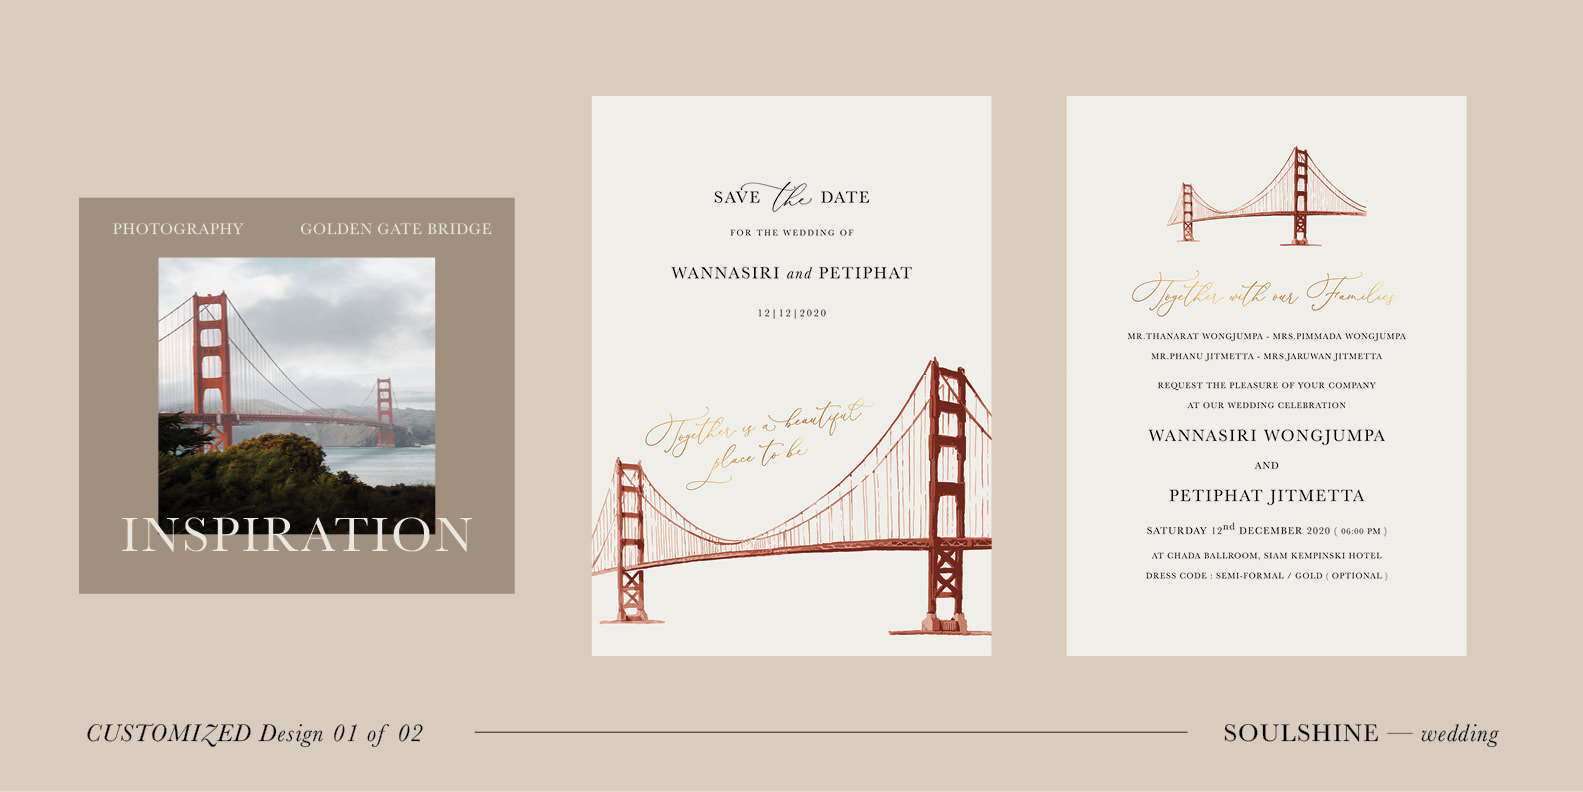 ออกแบบการ์ดแต่งงาน พิมพ์การ์ดแต่งงาน มินิมอล สไตล์เรียบหรู สวยๆ แนววินเทจ เก๋ๆ ปรับแก้แบบการ์ด customized 01